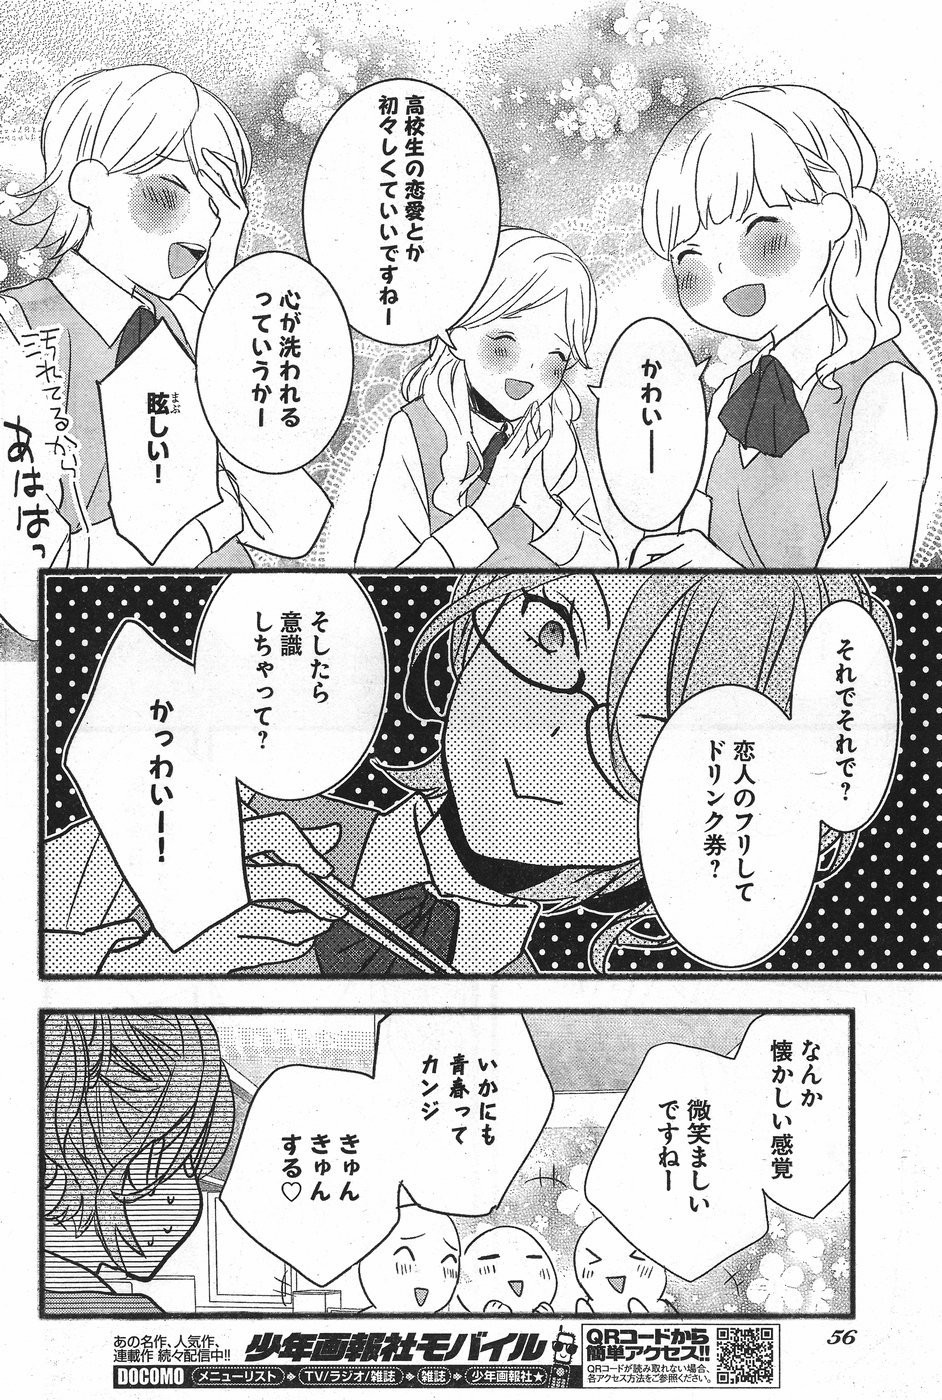 Bokura wa Minna Kawaisou - Chapter 71 - Page 8